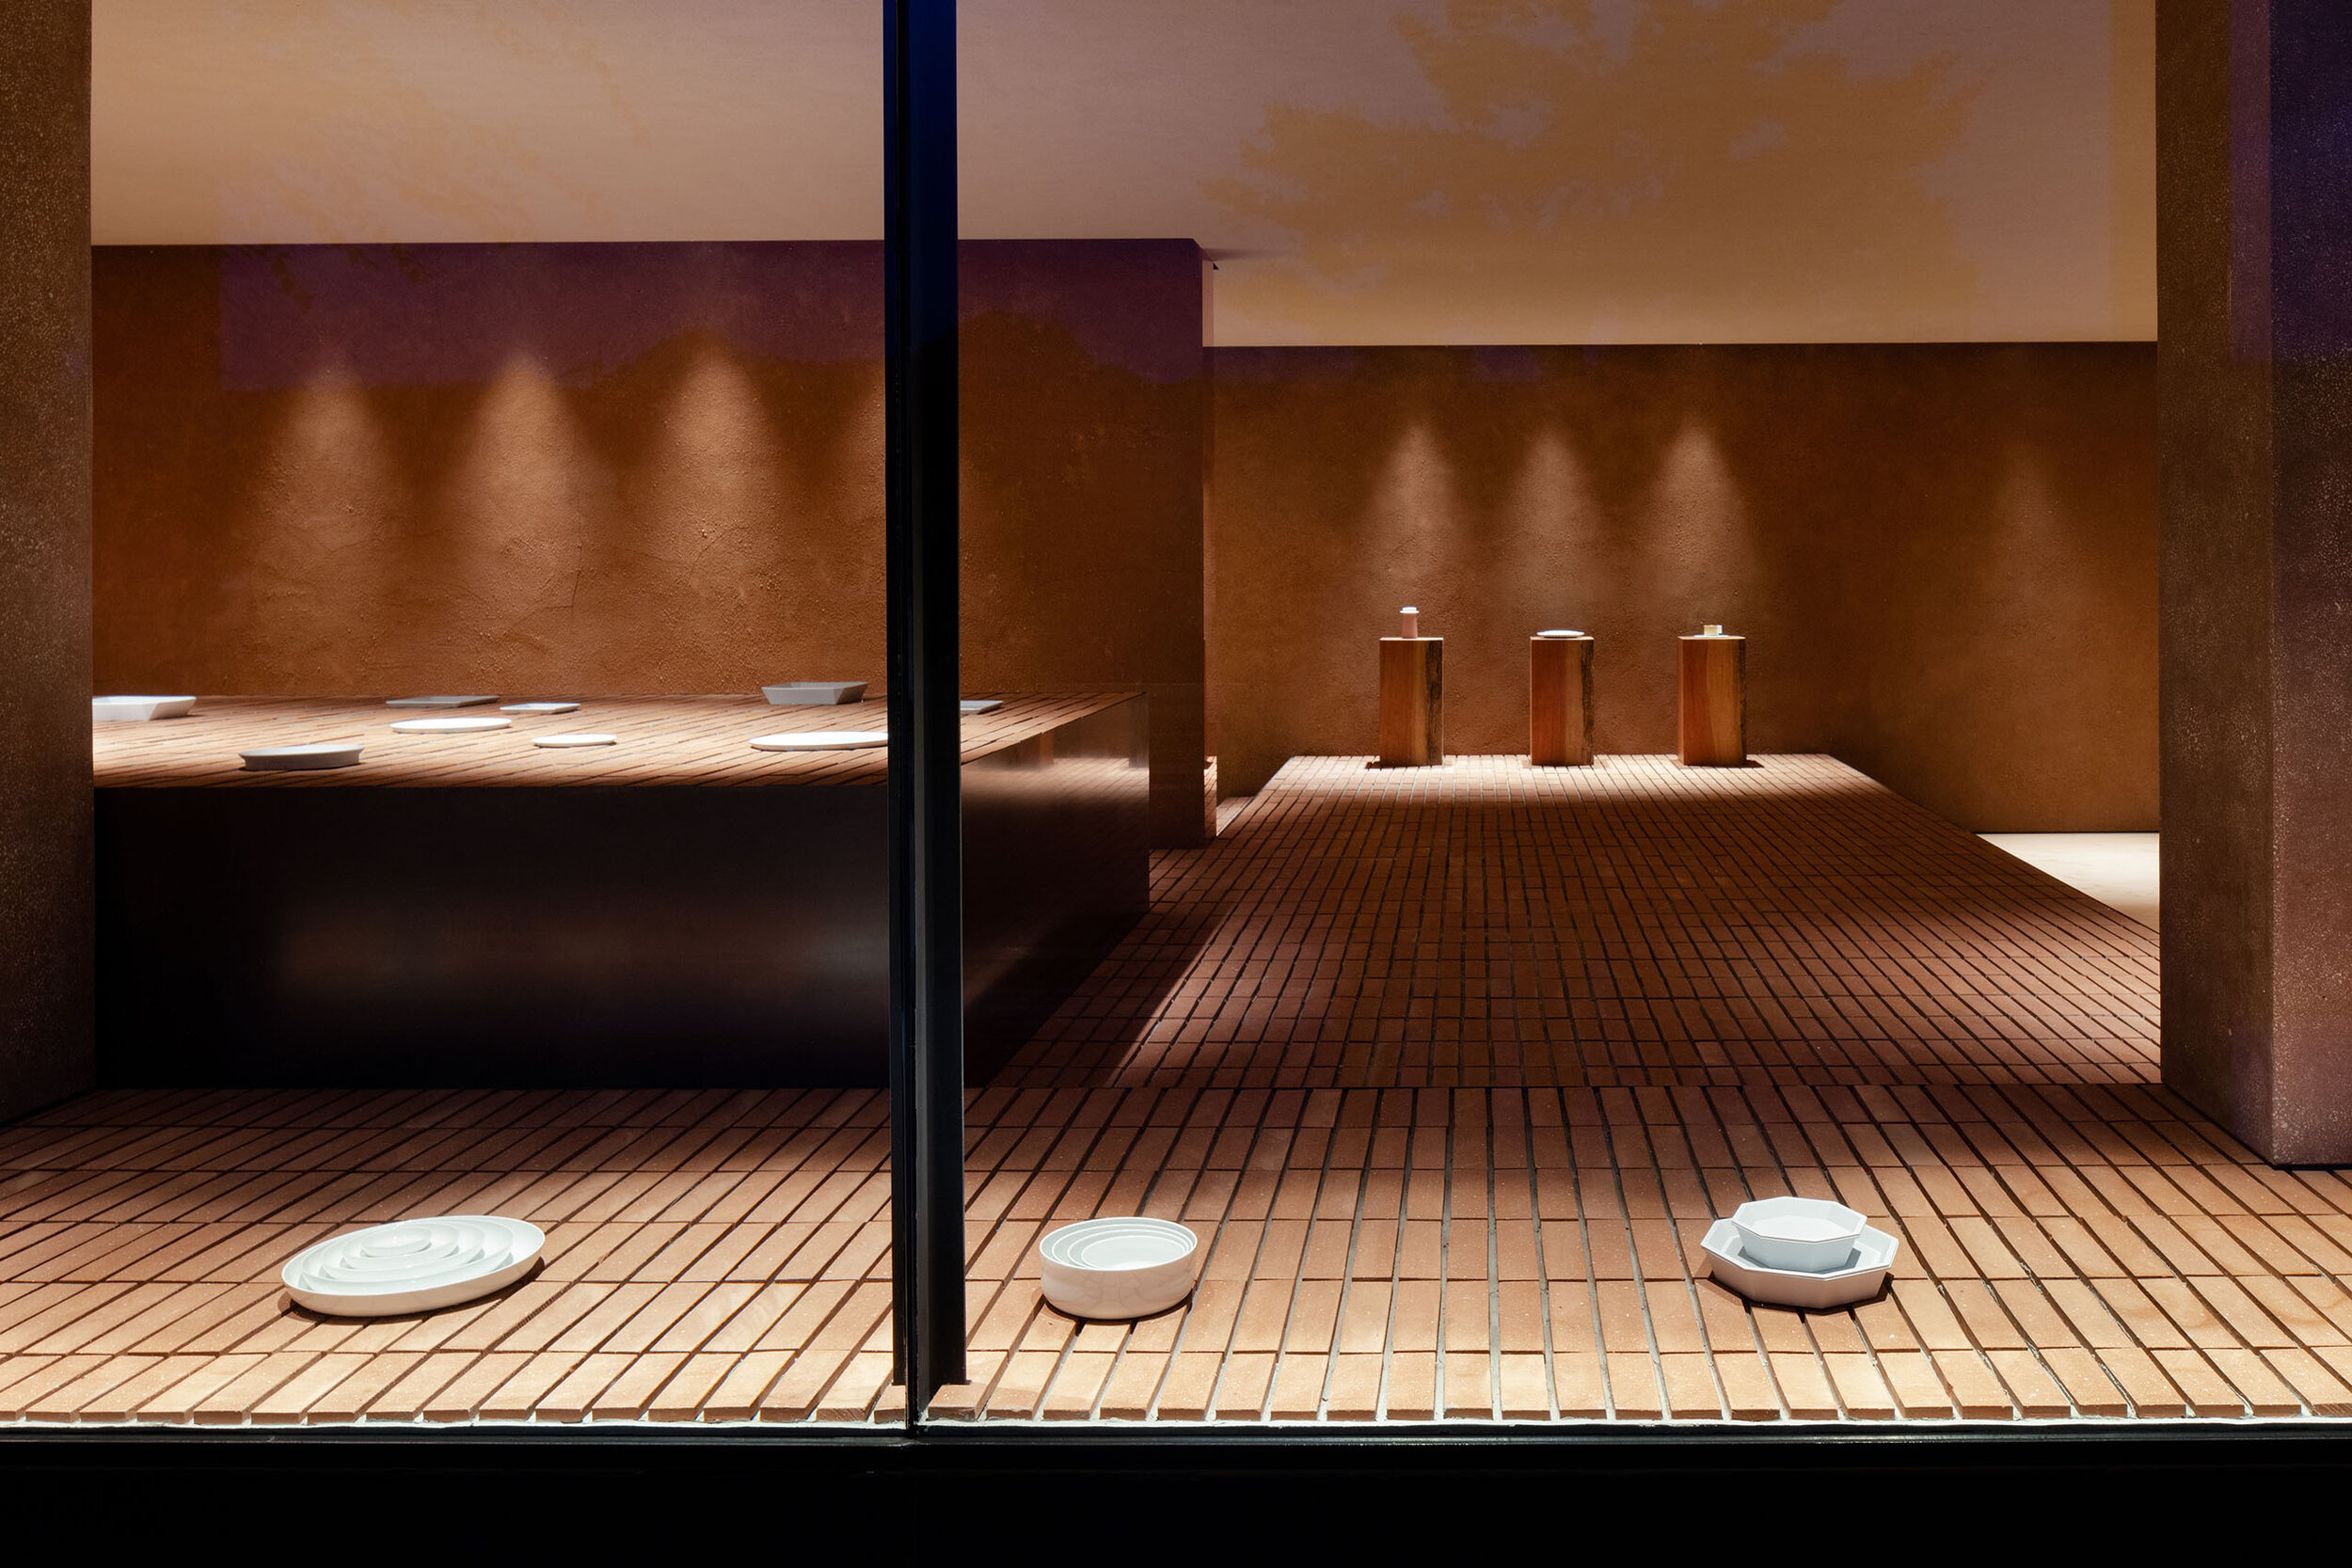  Teruhiro Yanagihara Studio has designed calm facade for 1616/arita japan showroom in Arita, Japan. 